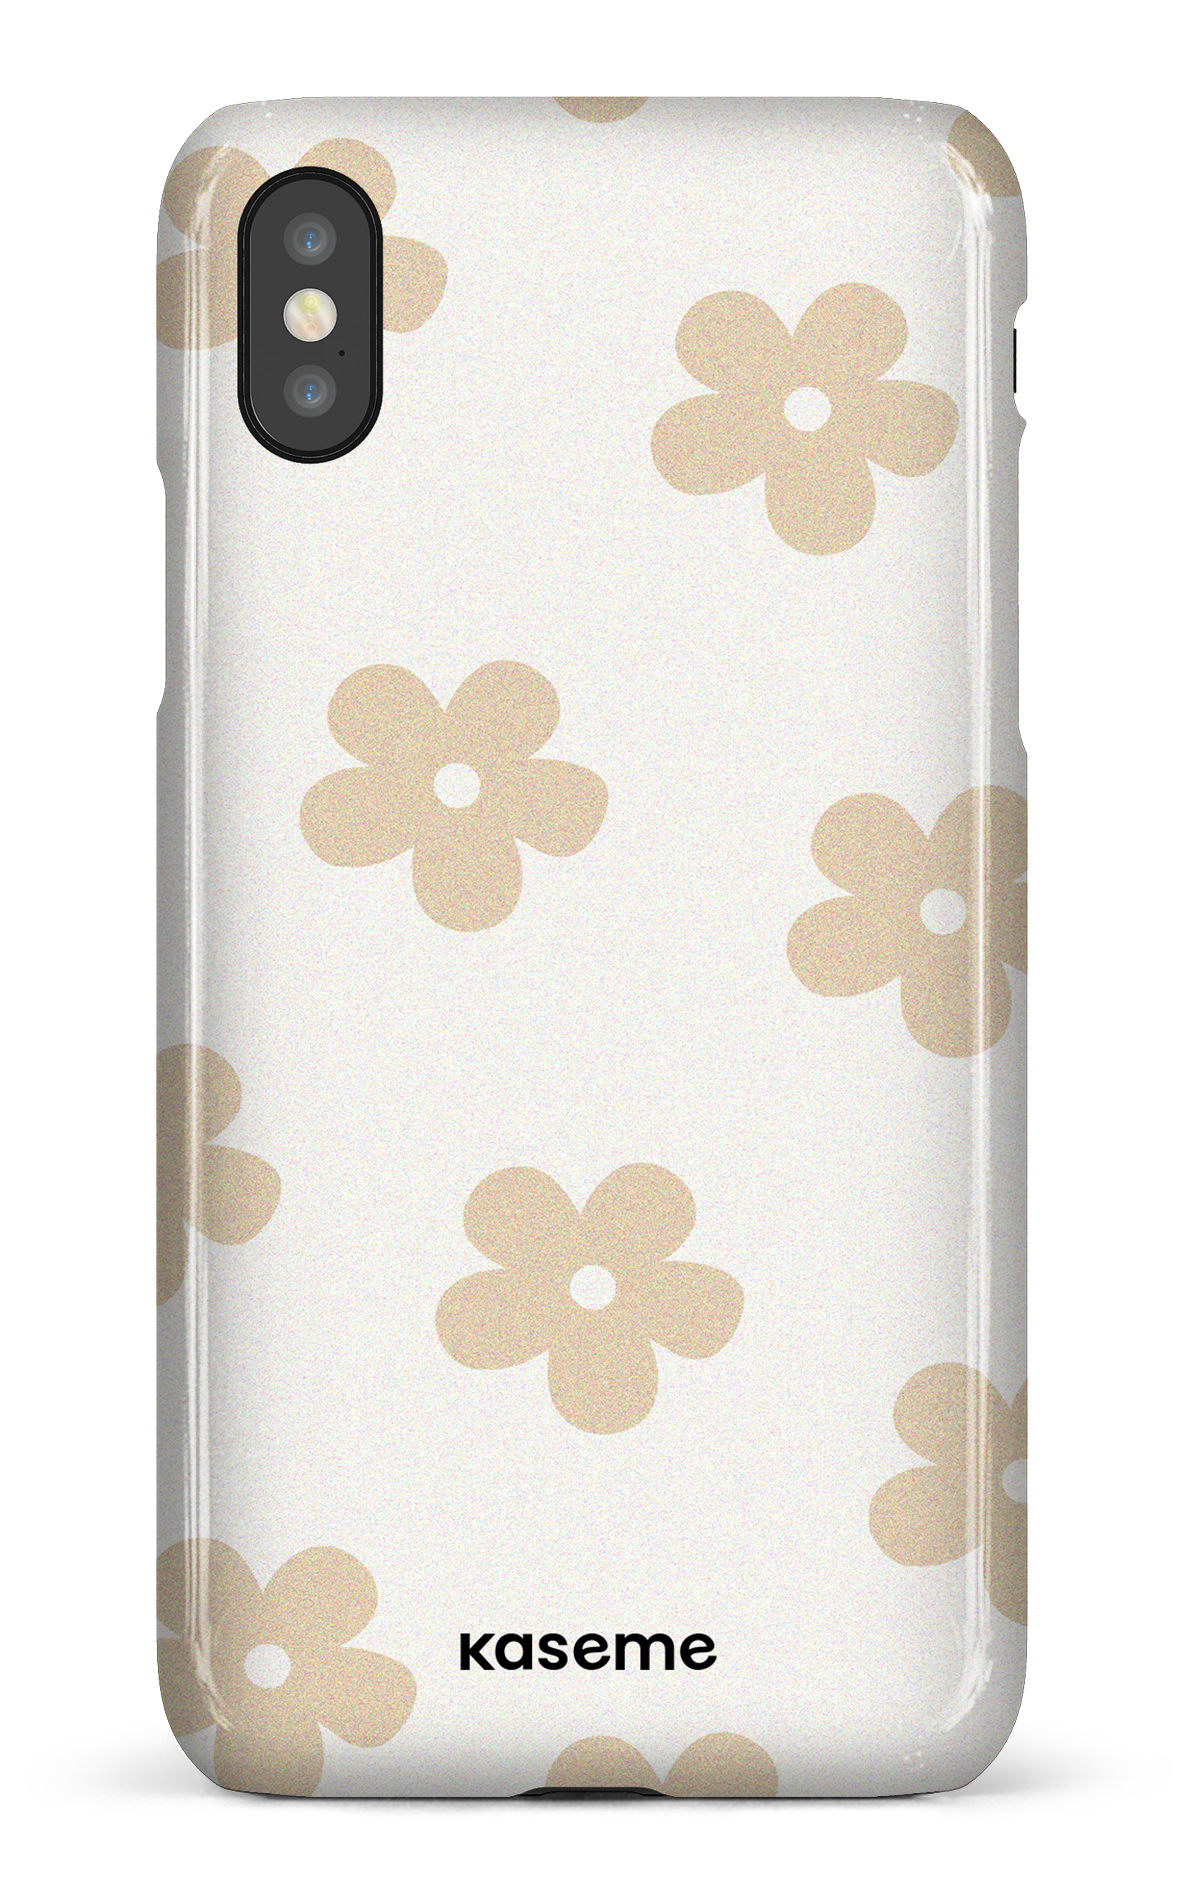 Woodstock beige - iPhone X/XS